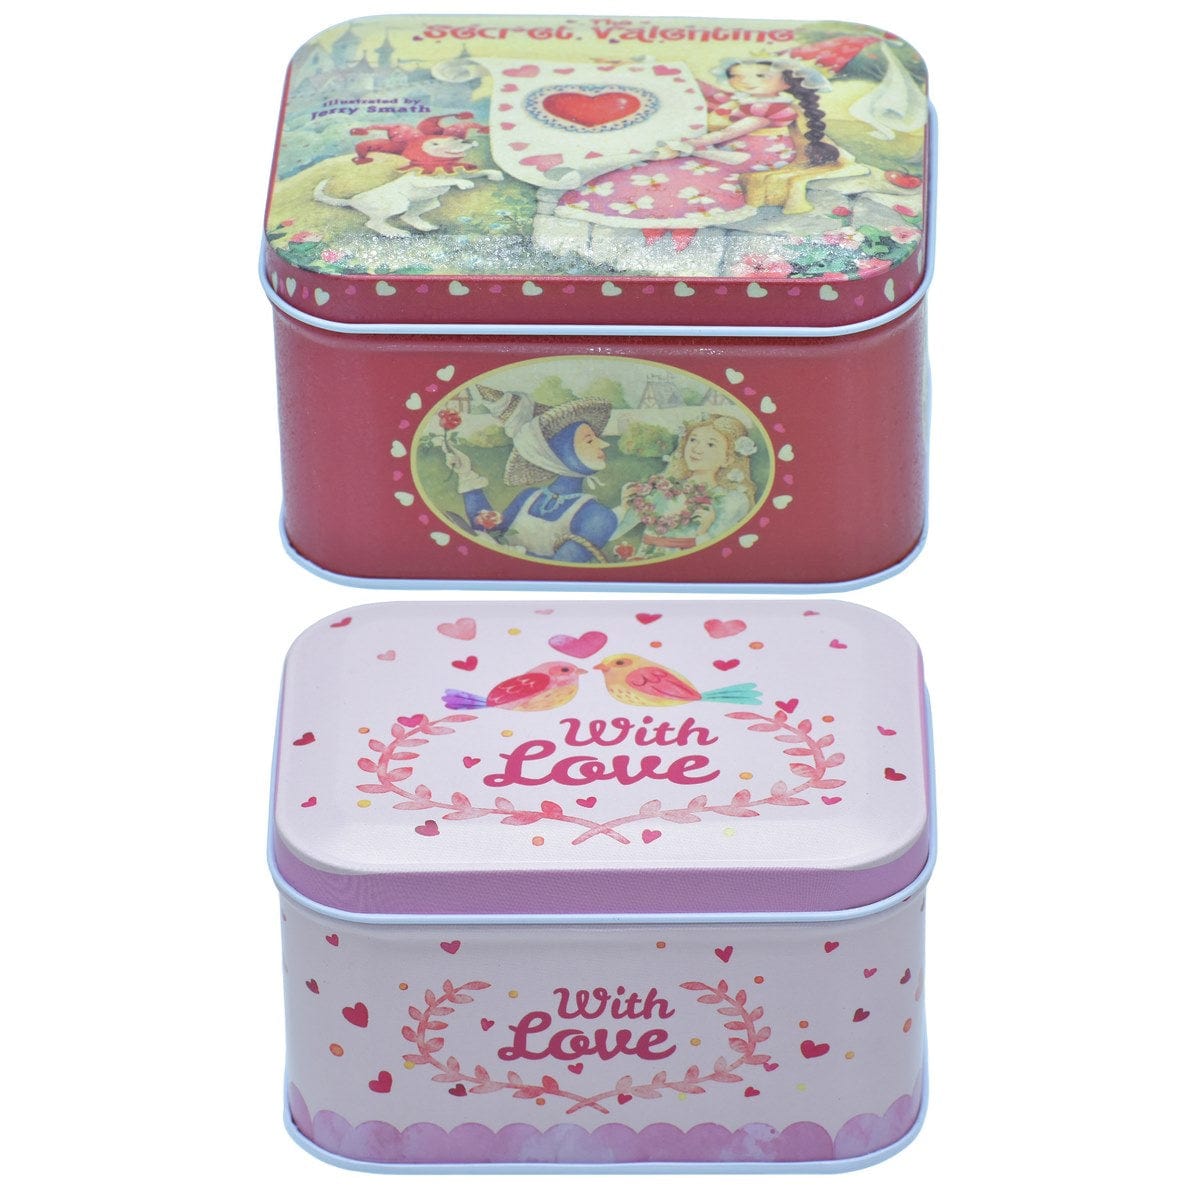 jags-mumbai Metal Box Metal Tin box for gifting I Metal Tinbox Rectangle Medium I Metal Medicine Box I Card holder